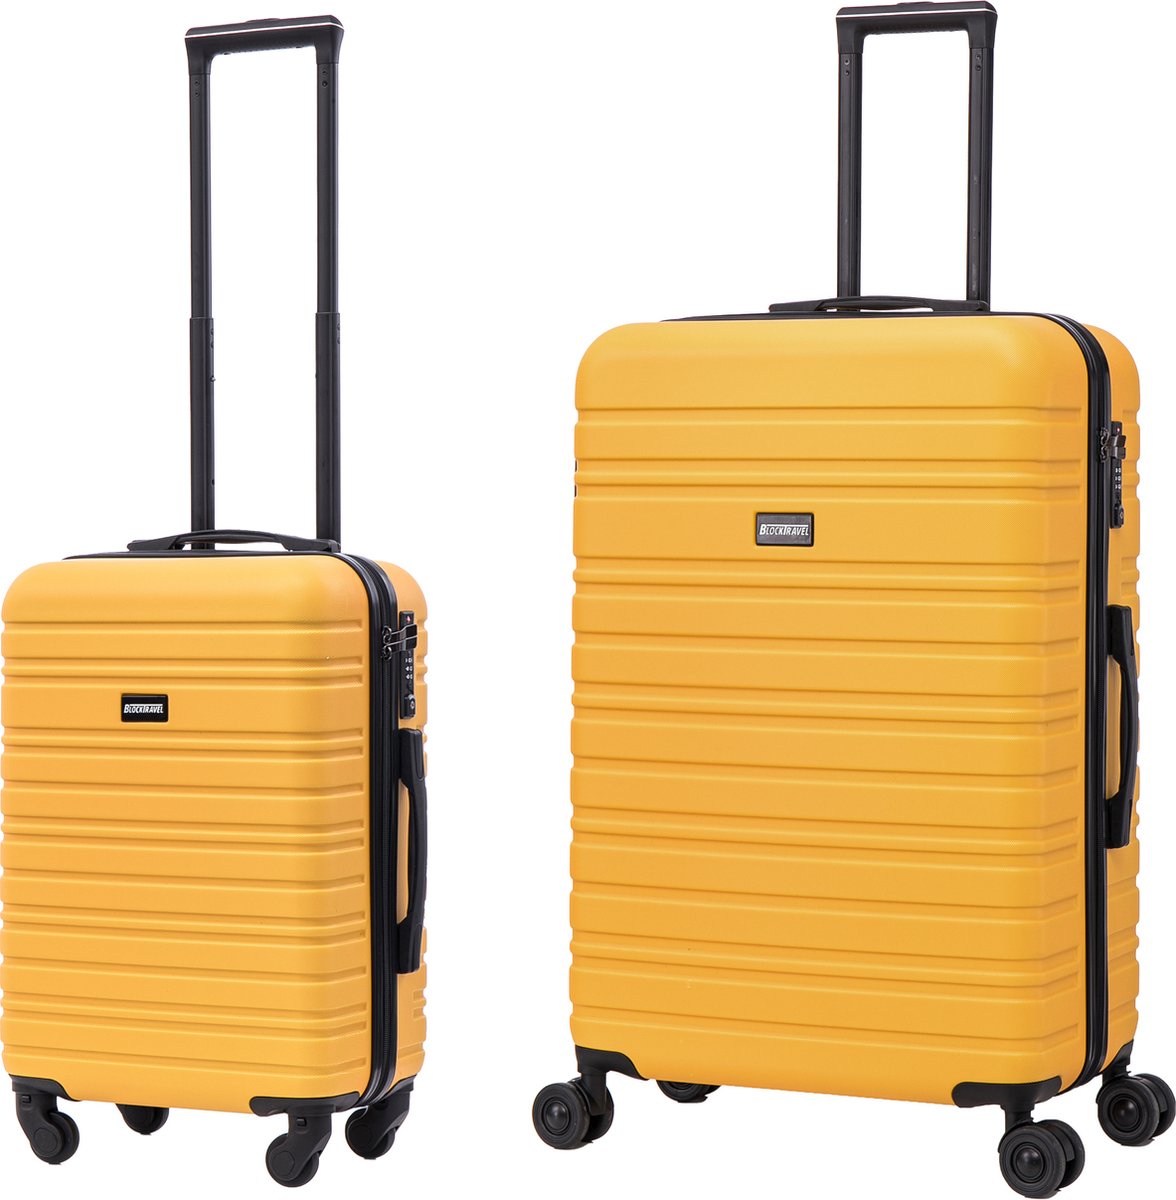 BlockTravel kofferset 2 delig ABS ruimbagage en handbagage 39 en 95 liter - inbouw TSA slot - geel